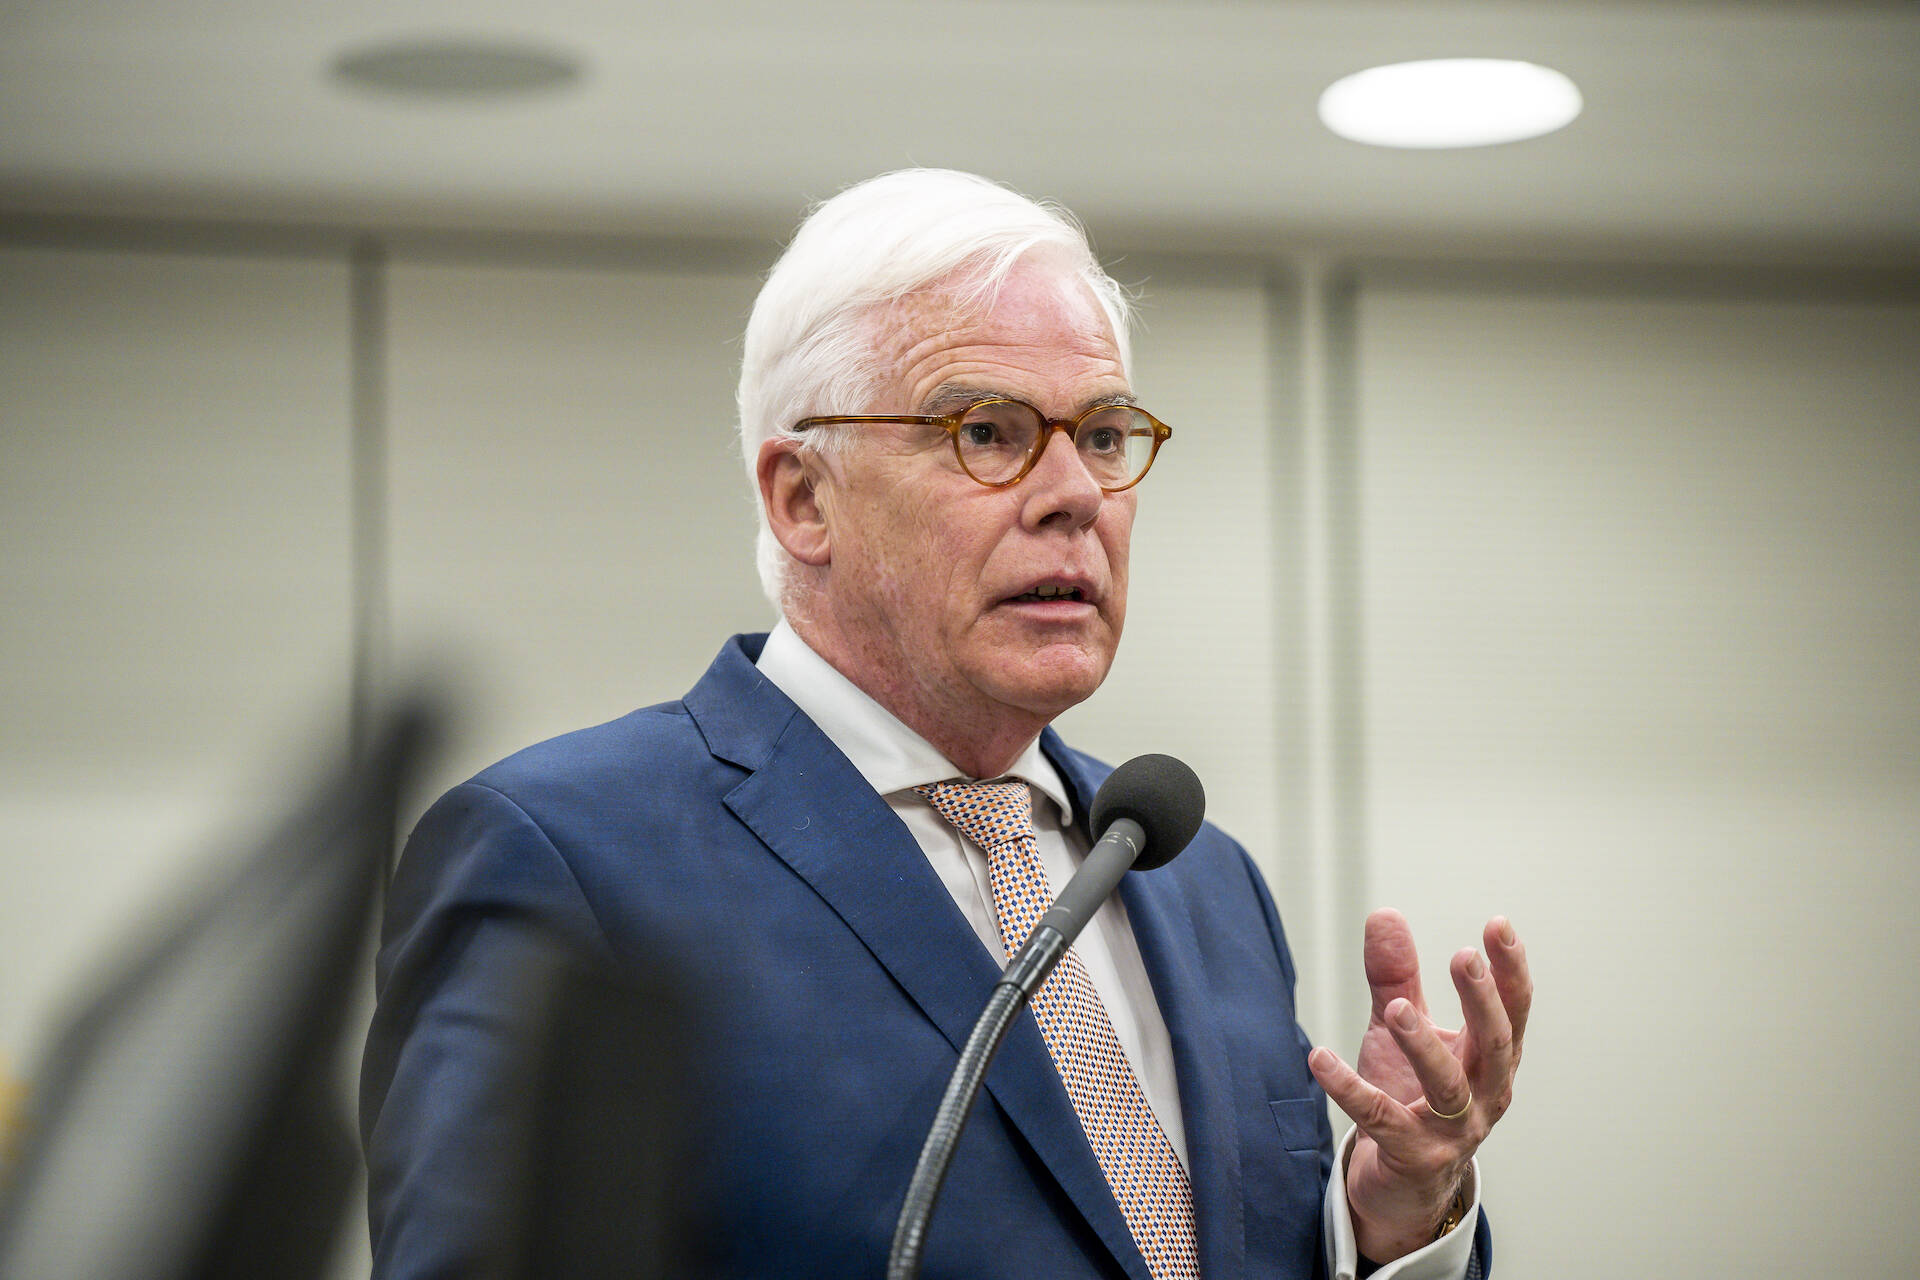 Senator Van Ballekom (VVD)